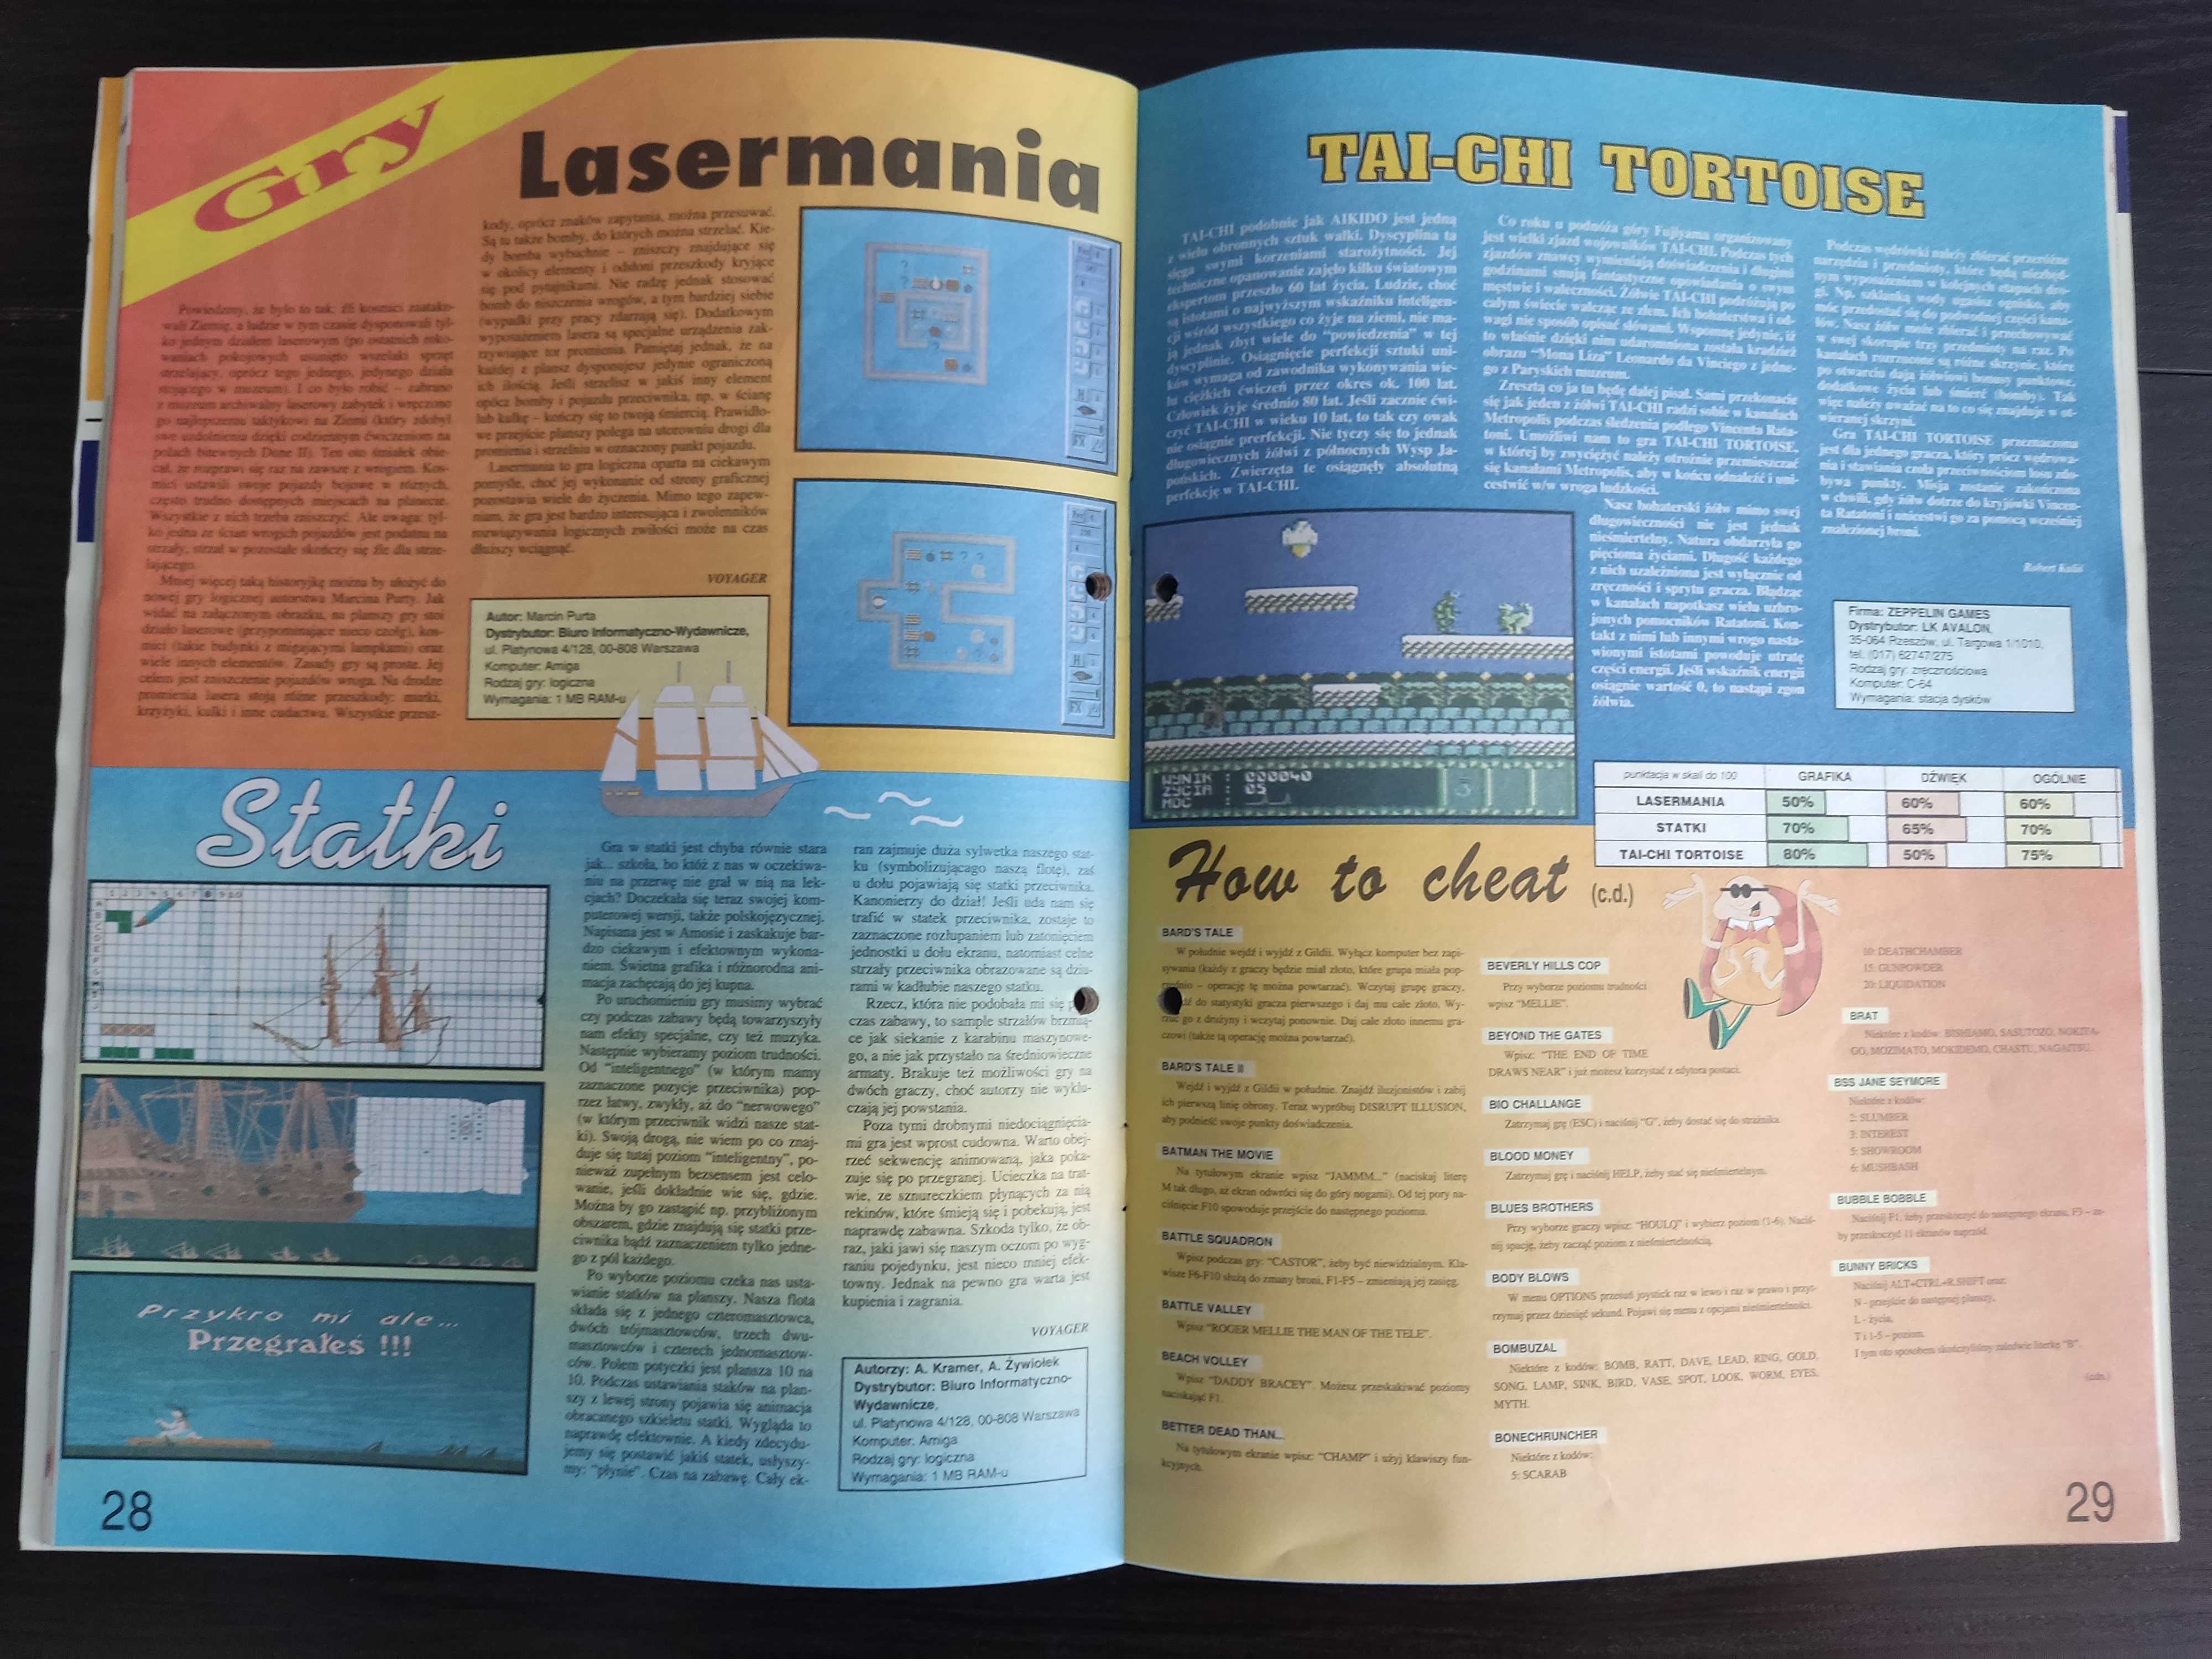 Commodore & Amiga (C&A) numer 5/94